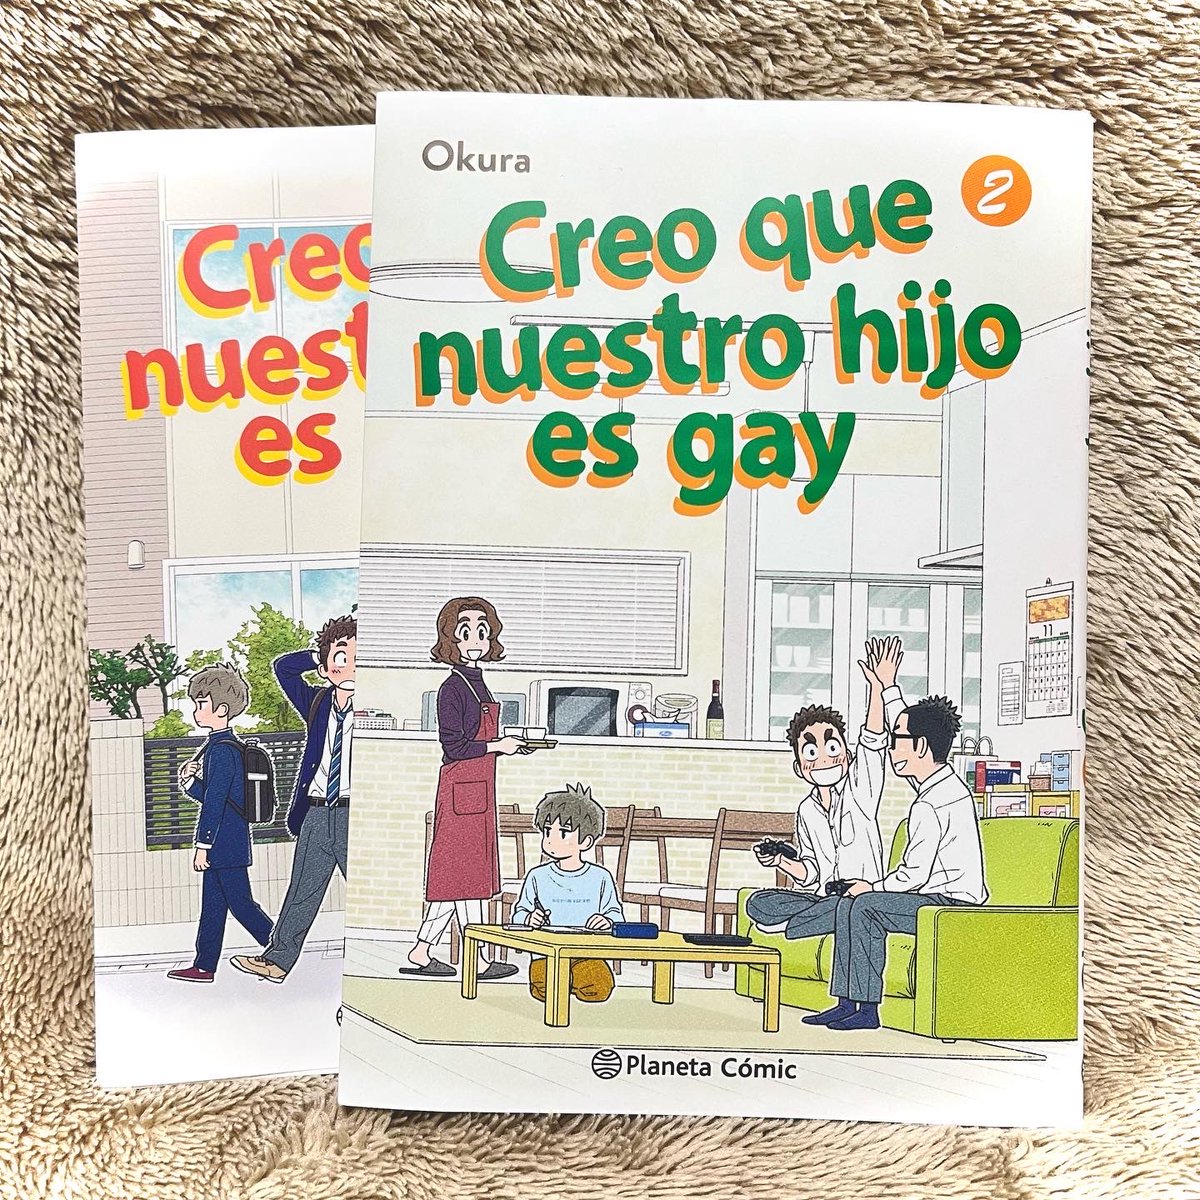 『うちの息子はたぶんゲイ』スペイン語訳版単行本2巻が届きました!スペイン語圏の方々にも1巻に引き続き楽しんでもらえたら嬉しいです🙌

#うちの息子はたぶんゲイ 